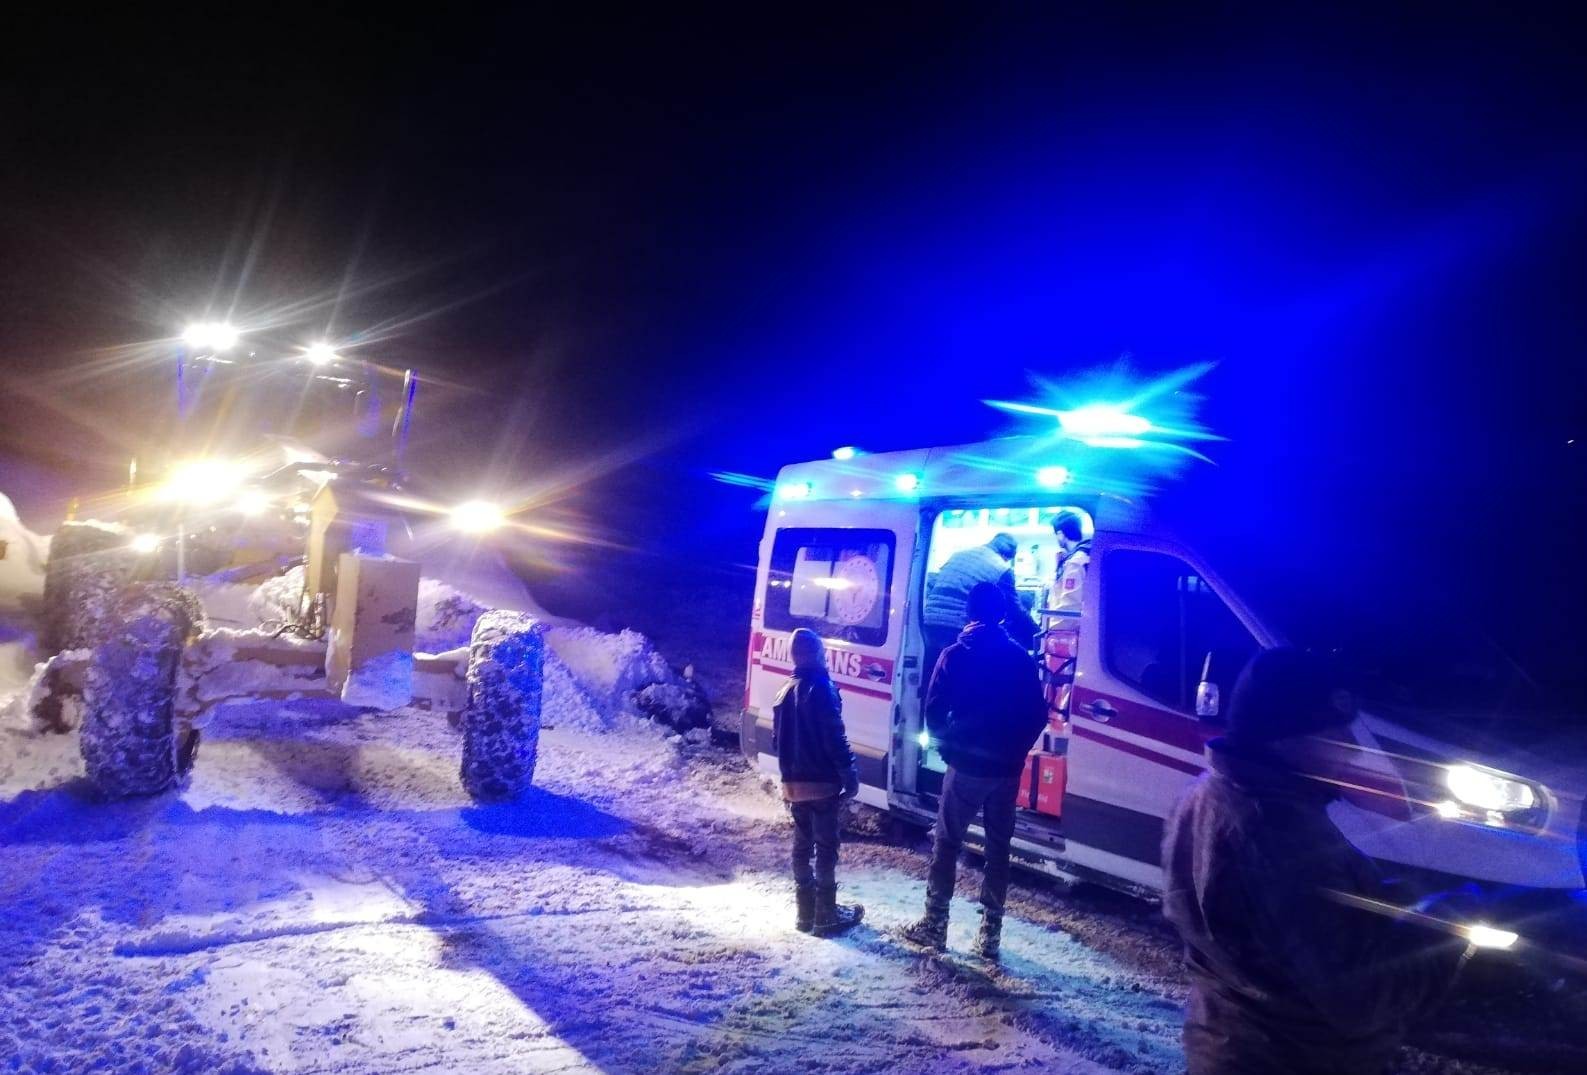 Batman’da ambulansların giremediği yollarda hastalar İl Özel İdare araçlarıyla taşındı #batman